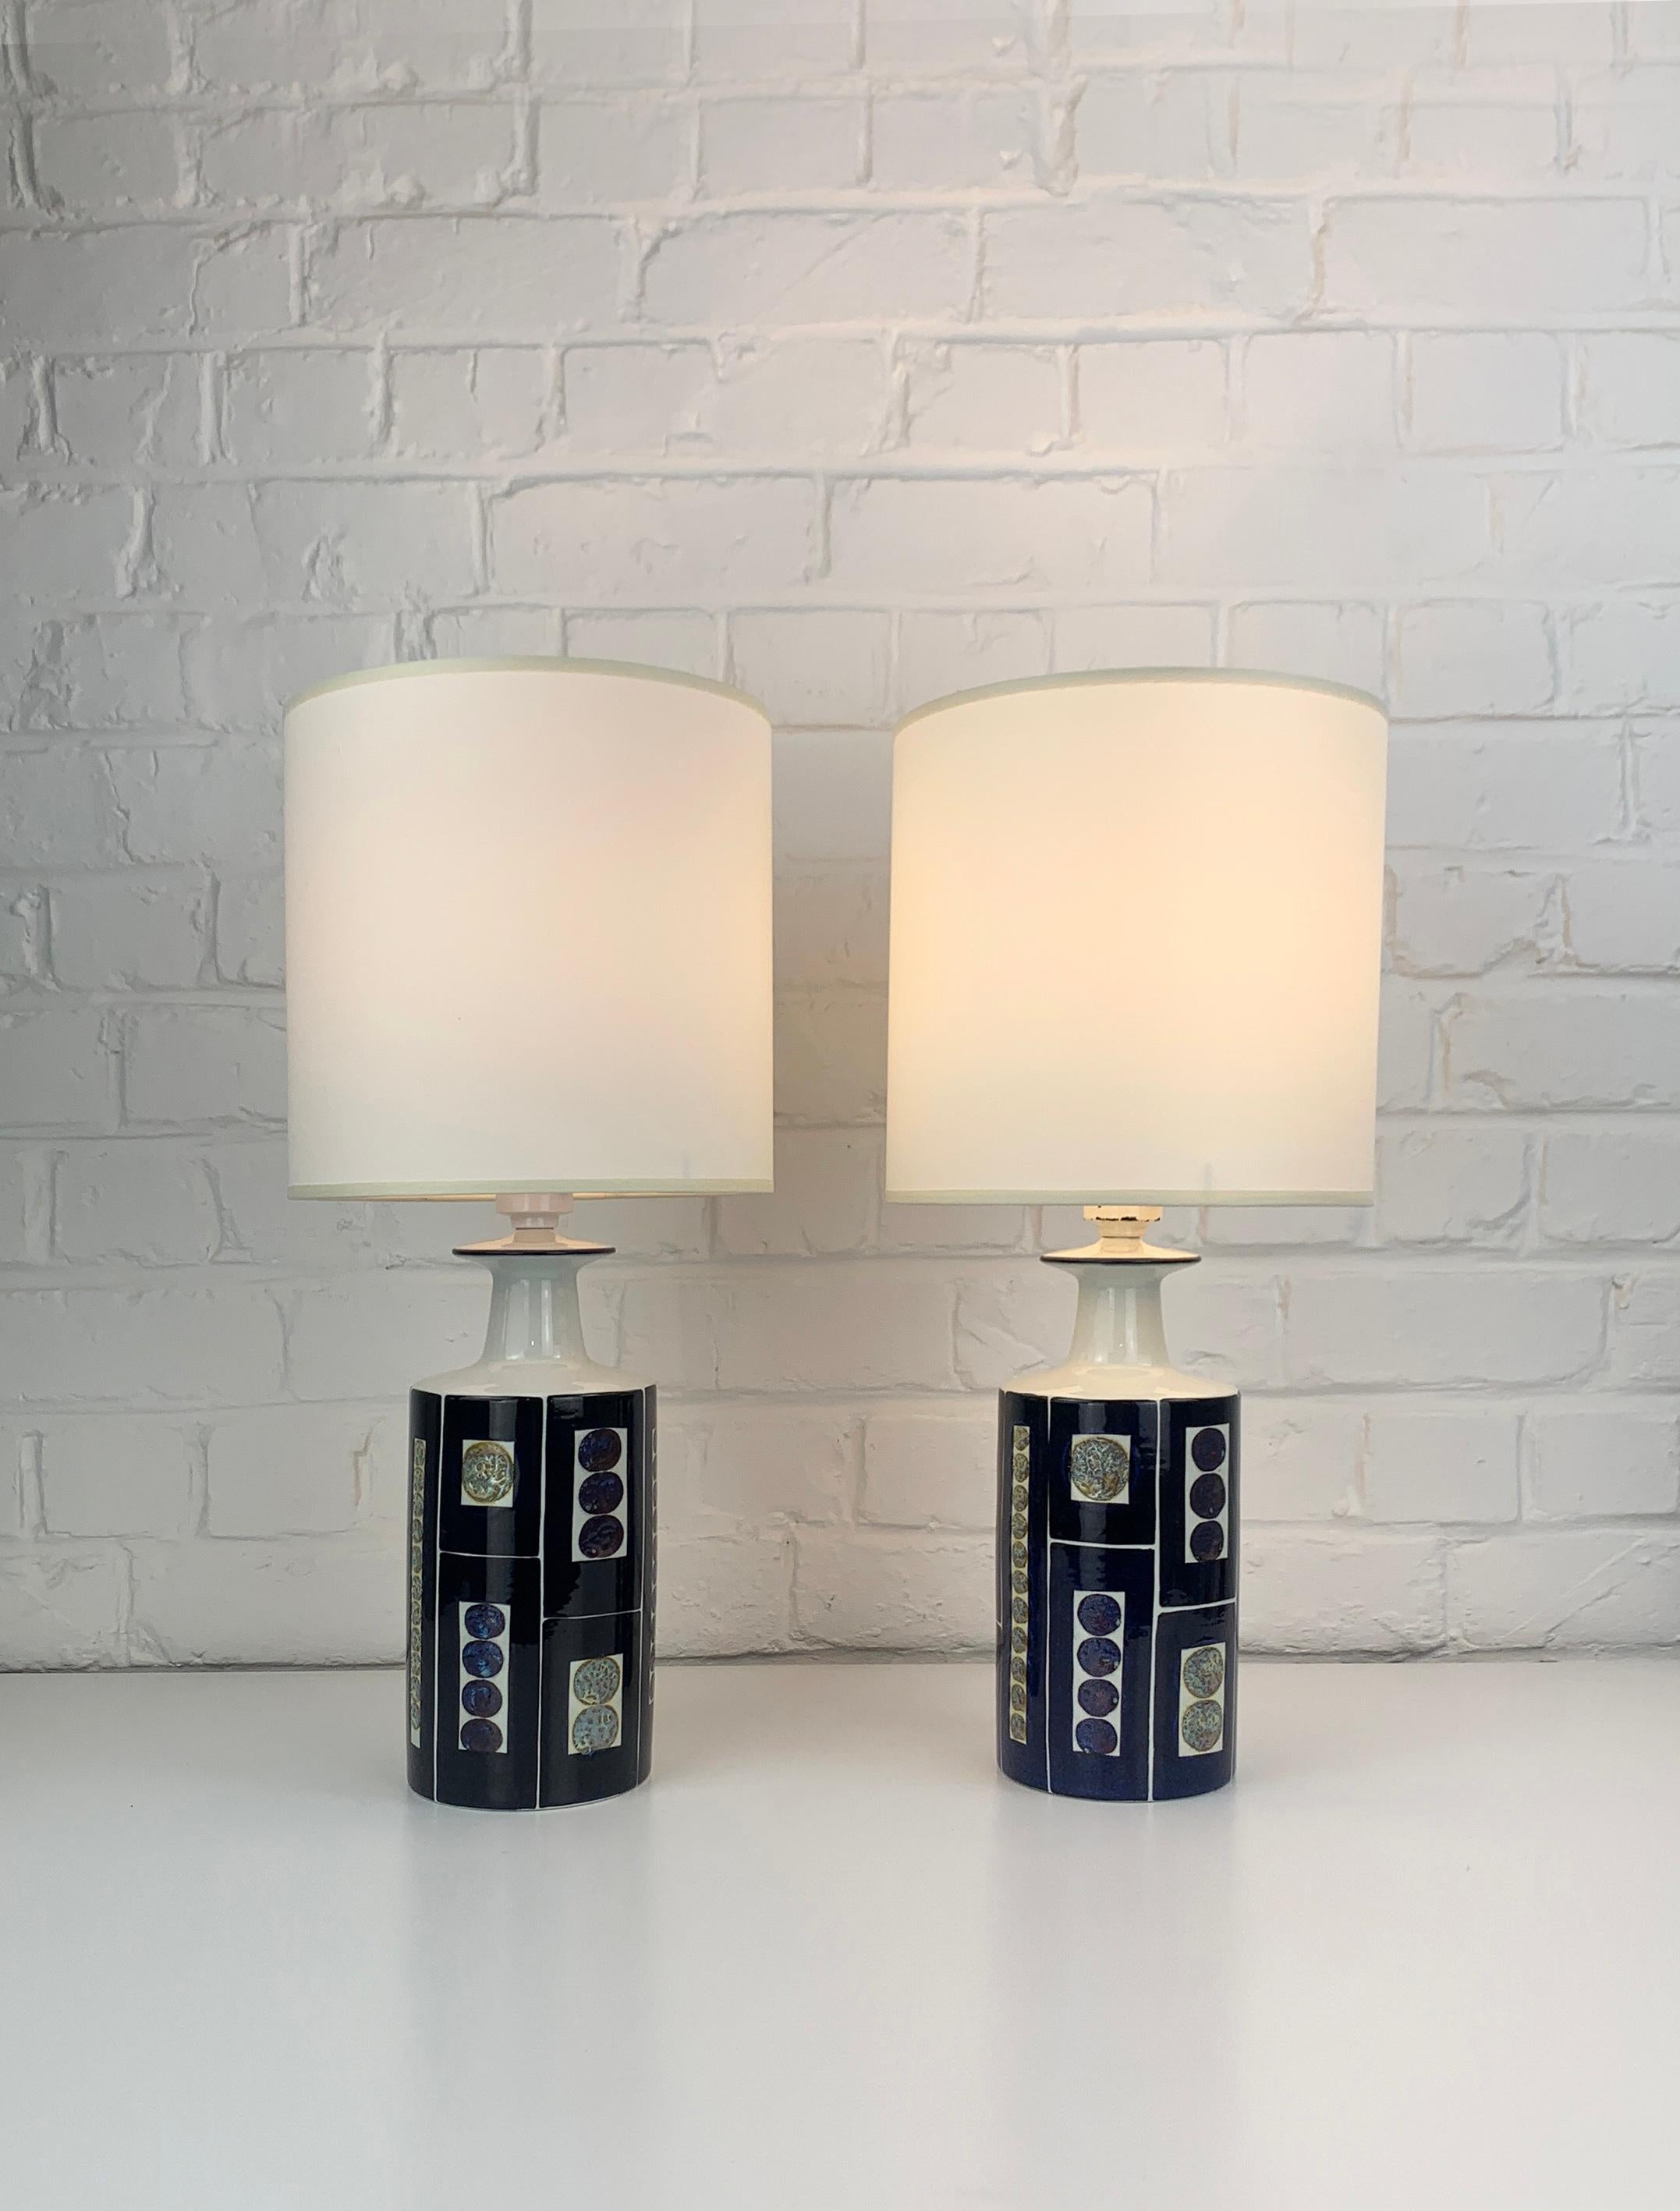 Paire de lampes de table de la fin des années 1960 ou du début des années 1970. Ces lampes ont été fabriquées par Royal Copenhagen et vendues par Fog & Mørup, Danemark. 

Impressionnante conception graphique audacieuse d'Inge-Lise Koefoed,